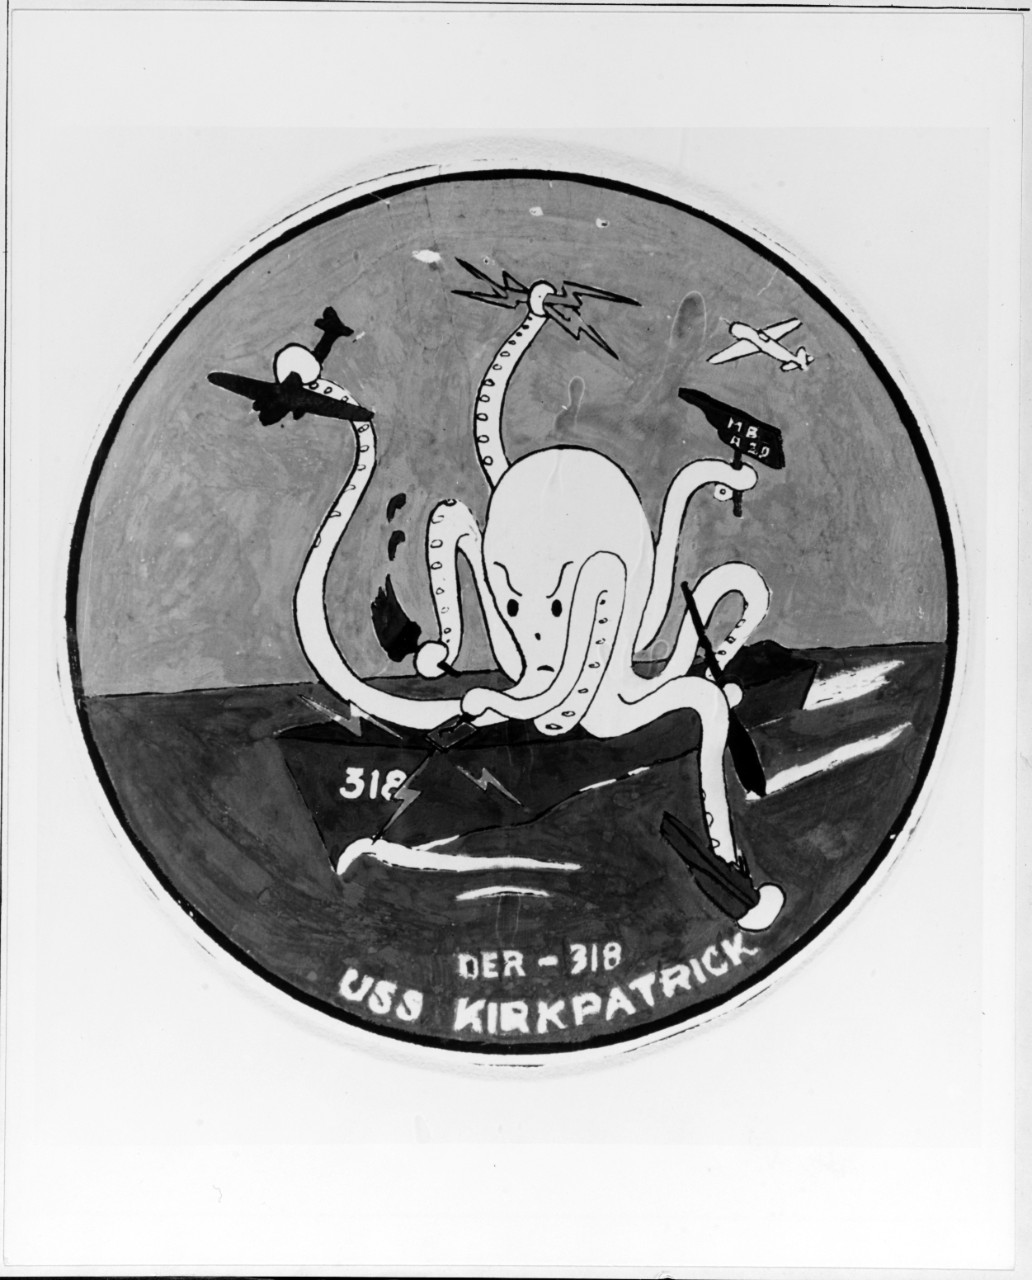 Insignia:  USS KIRKPATRICK (DER-318)